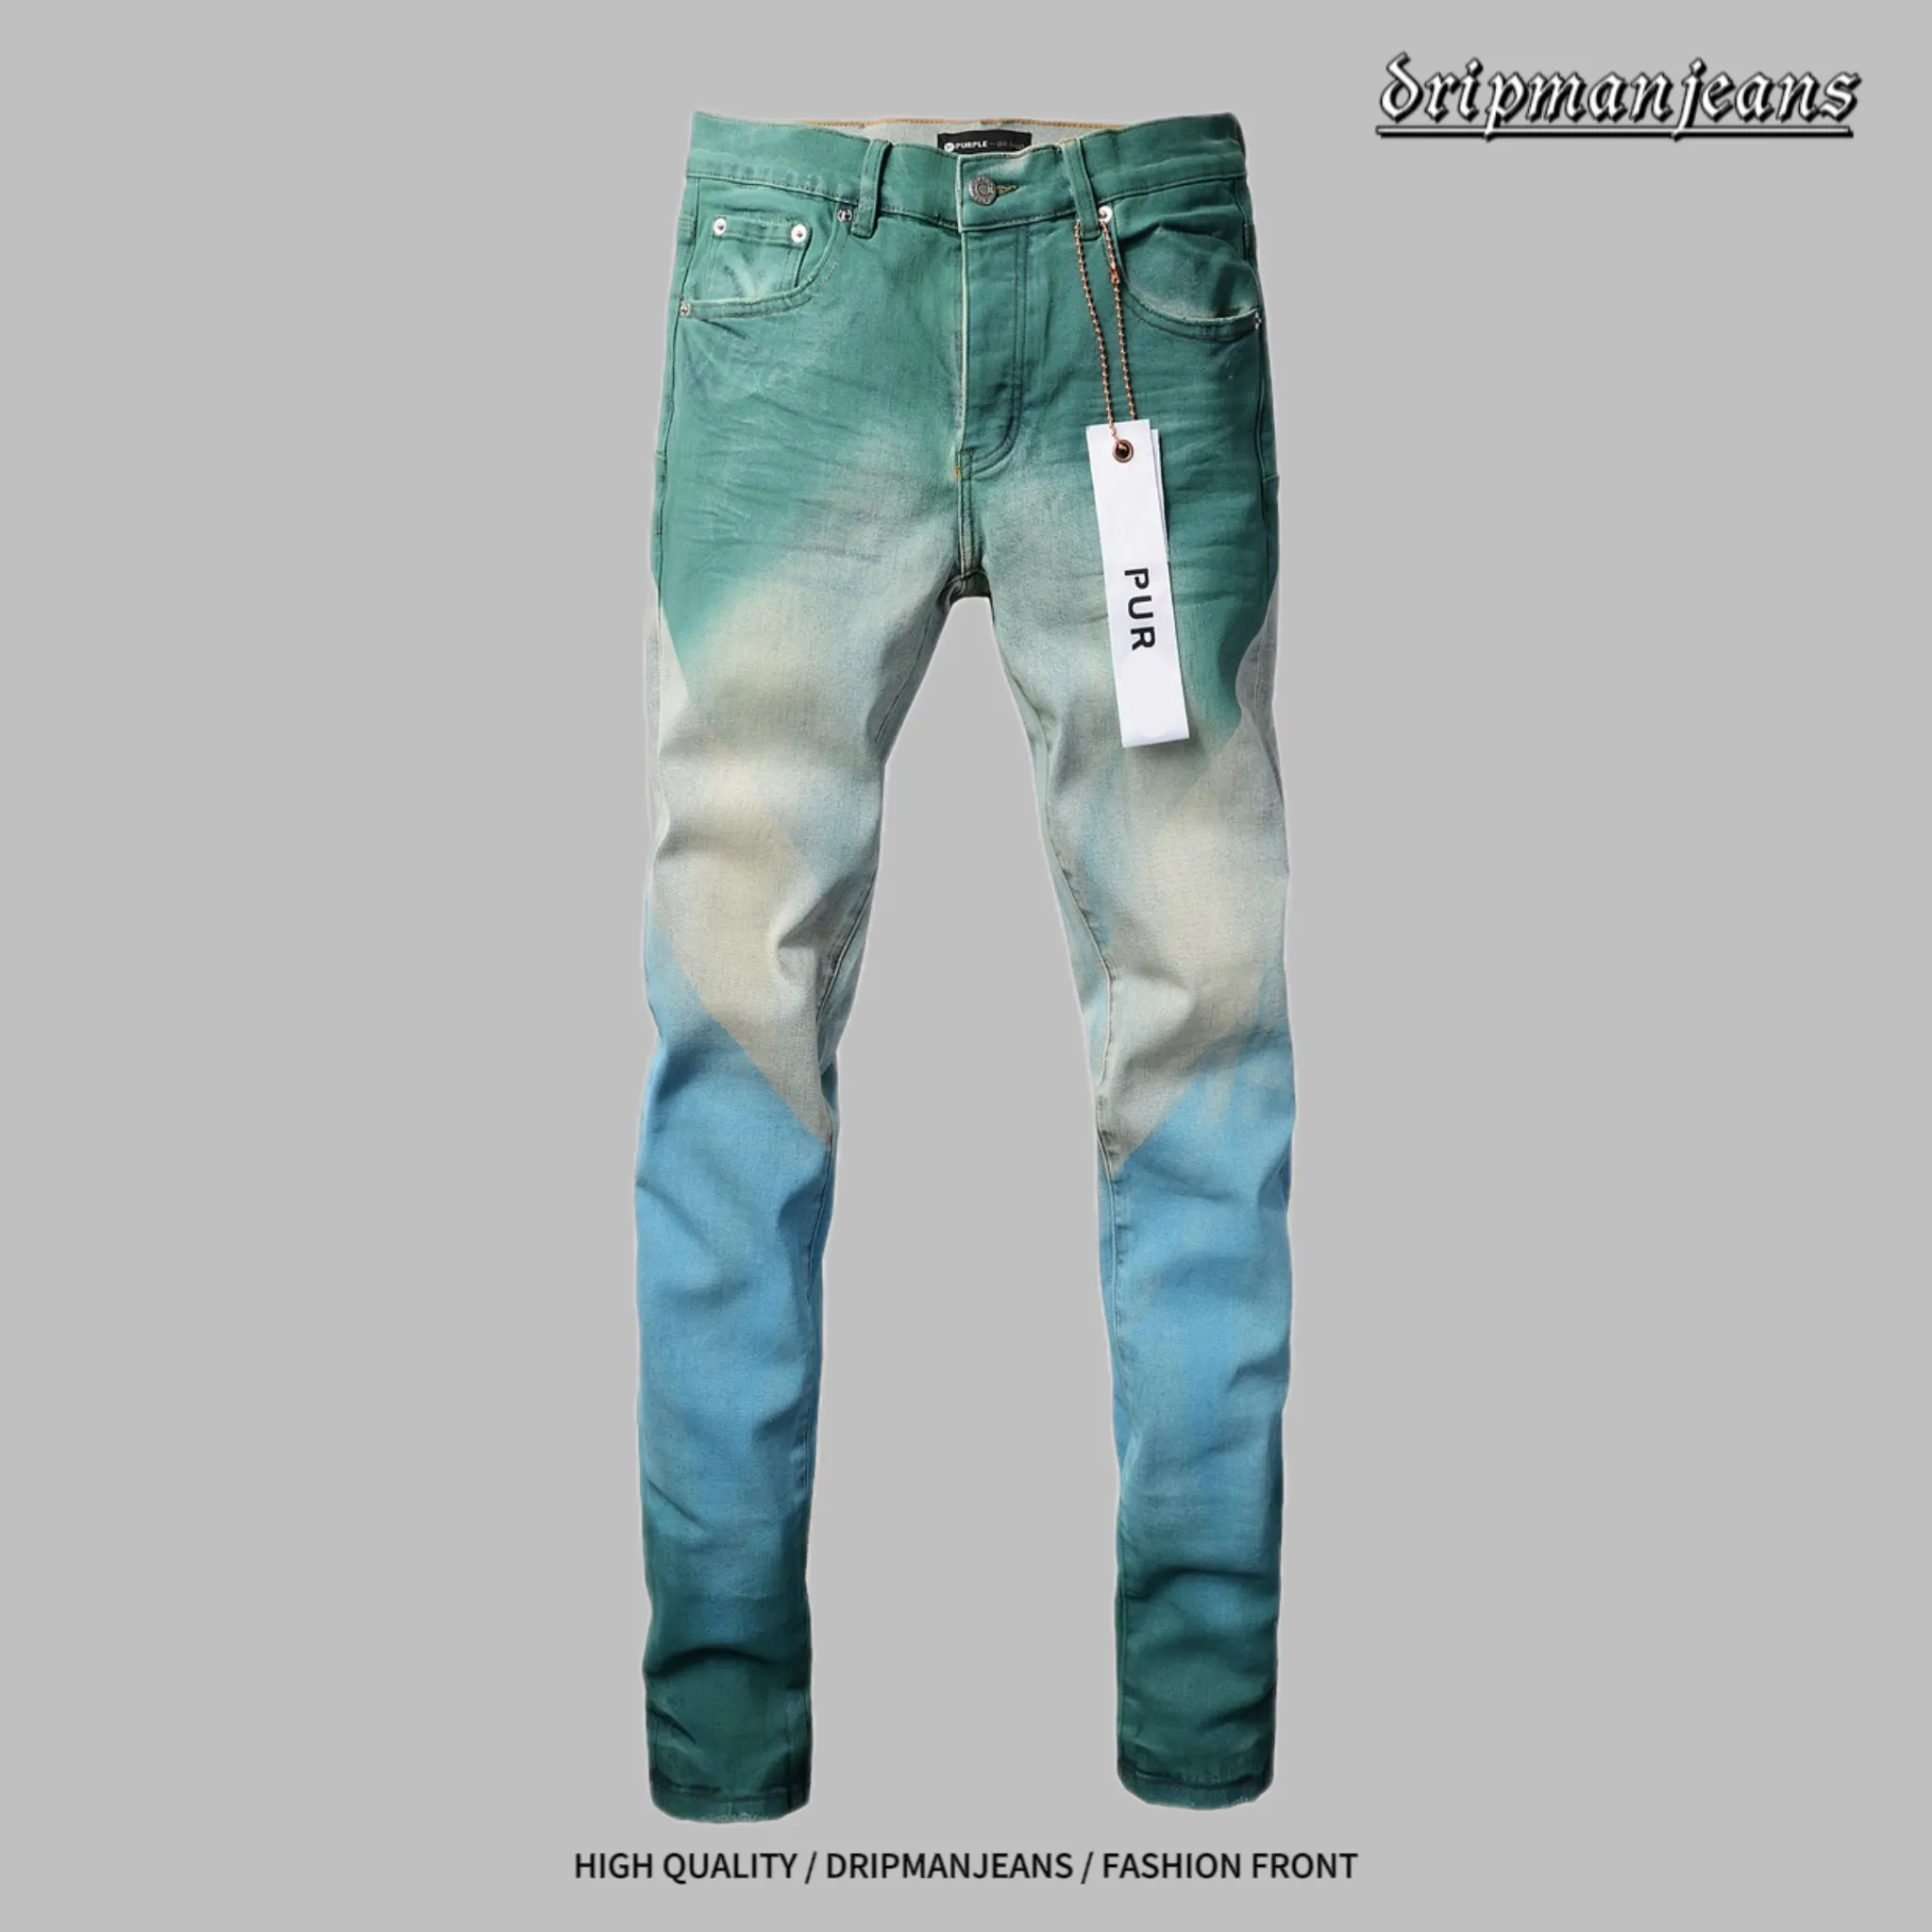 дизайнерские джинсы фиолетовые джинсы многослойные джинсы мужские свободные джинсы рваные джинсы европейские джинсы мужские брюки брюки машинная краска для галстука цветные брюки капельные джинсы